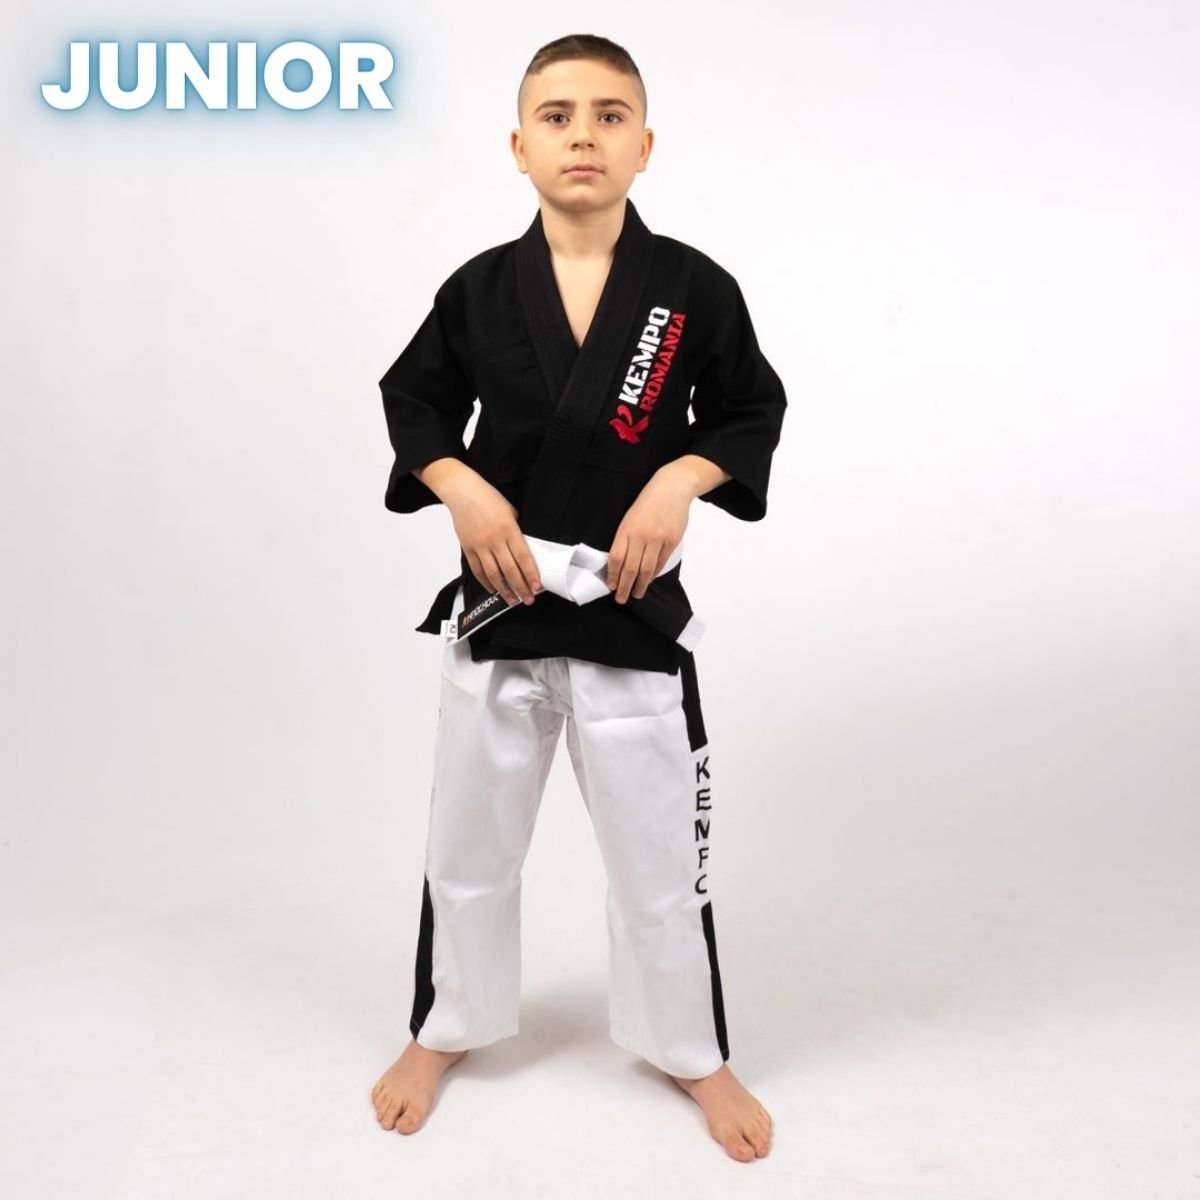 Kimono KEMPO Knockout Junior | knock-out.ro